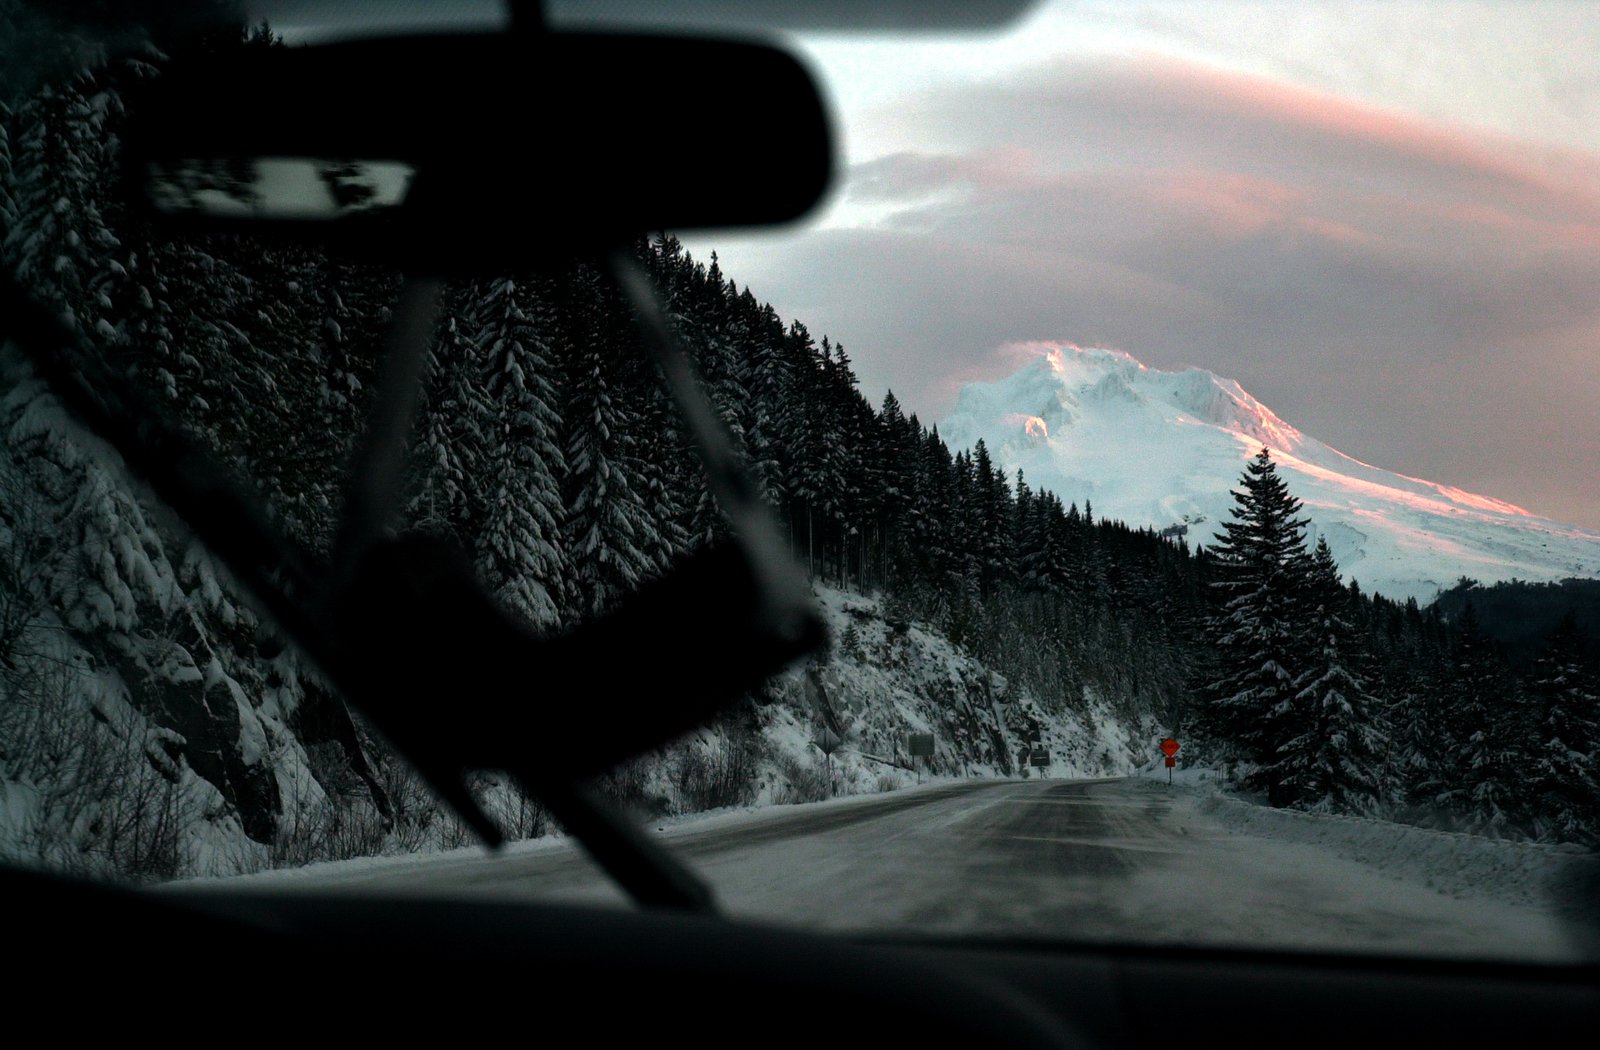 Mount Hood Sunrise